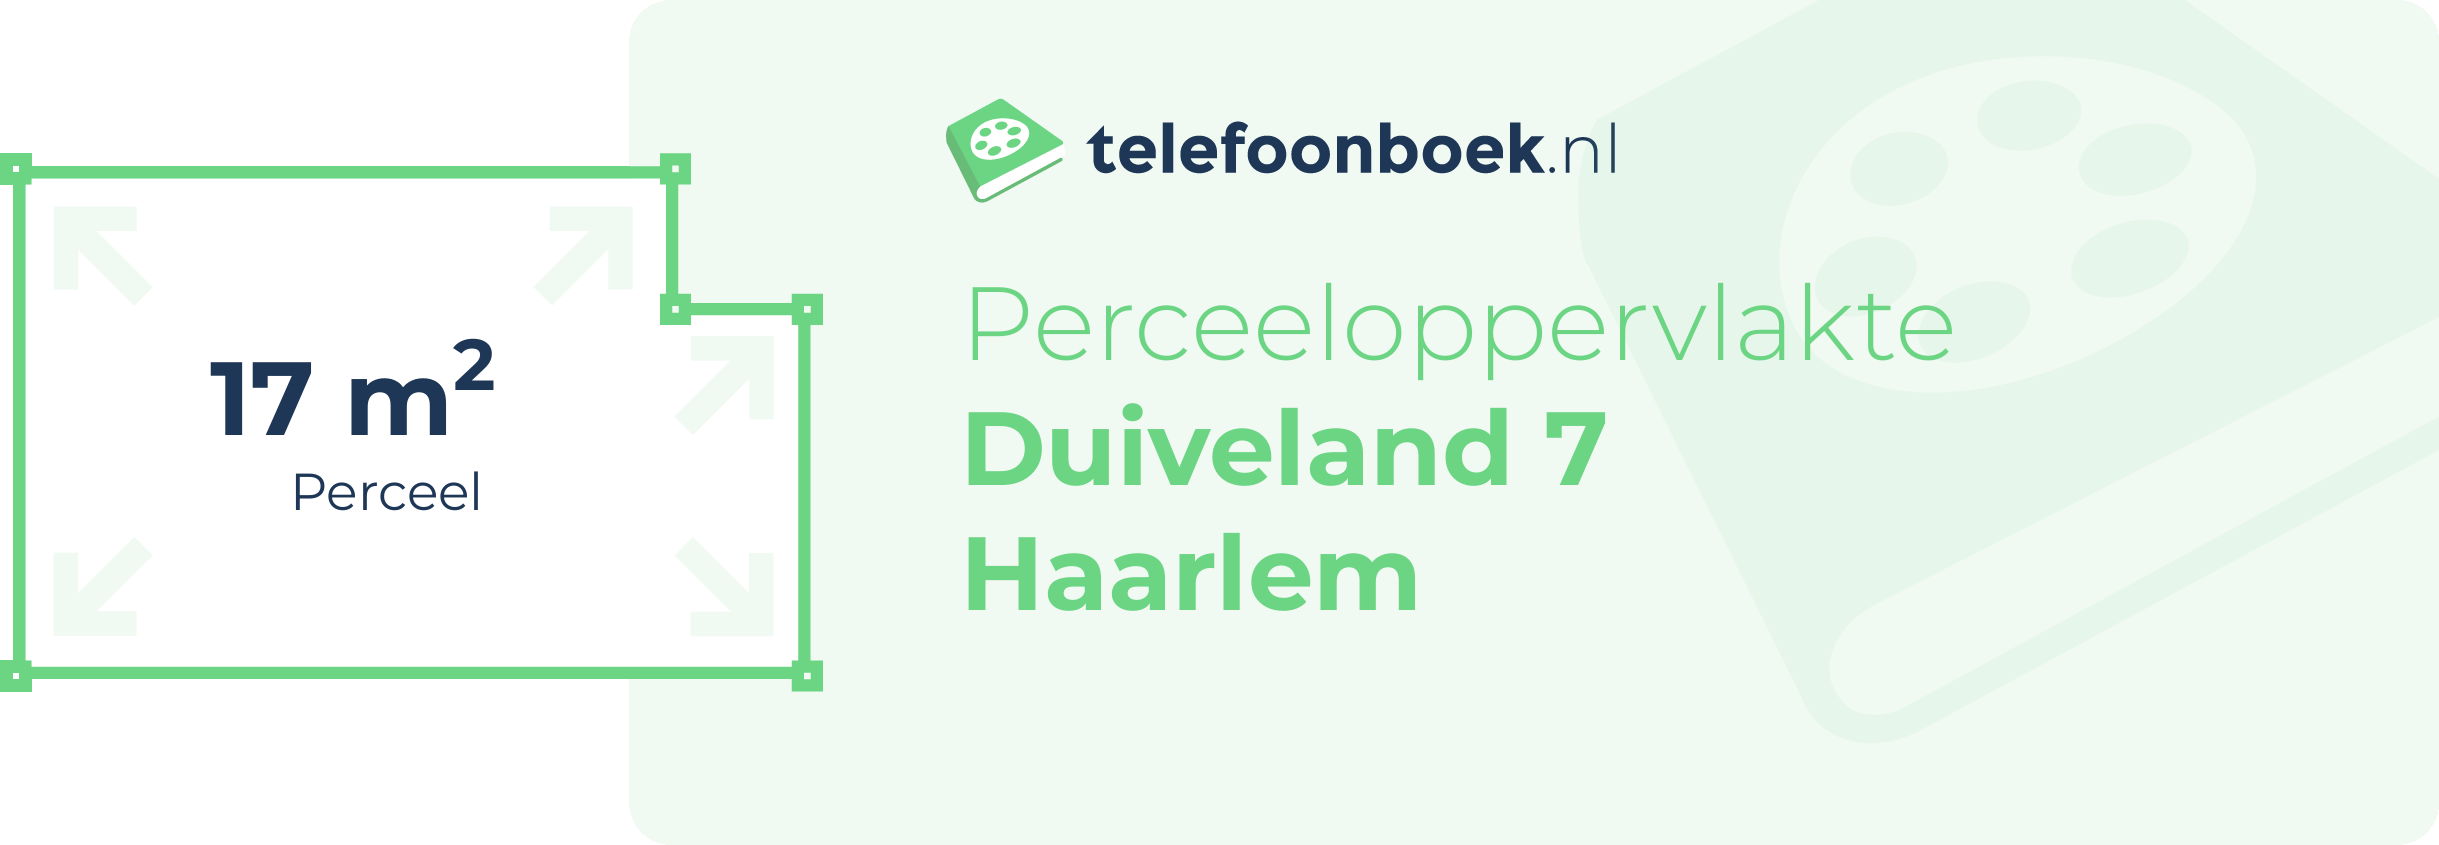 Perceeloppervlakte Duiveland 7 Haarlem